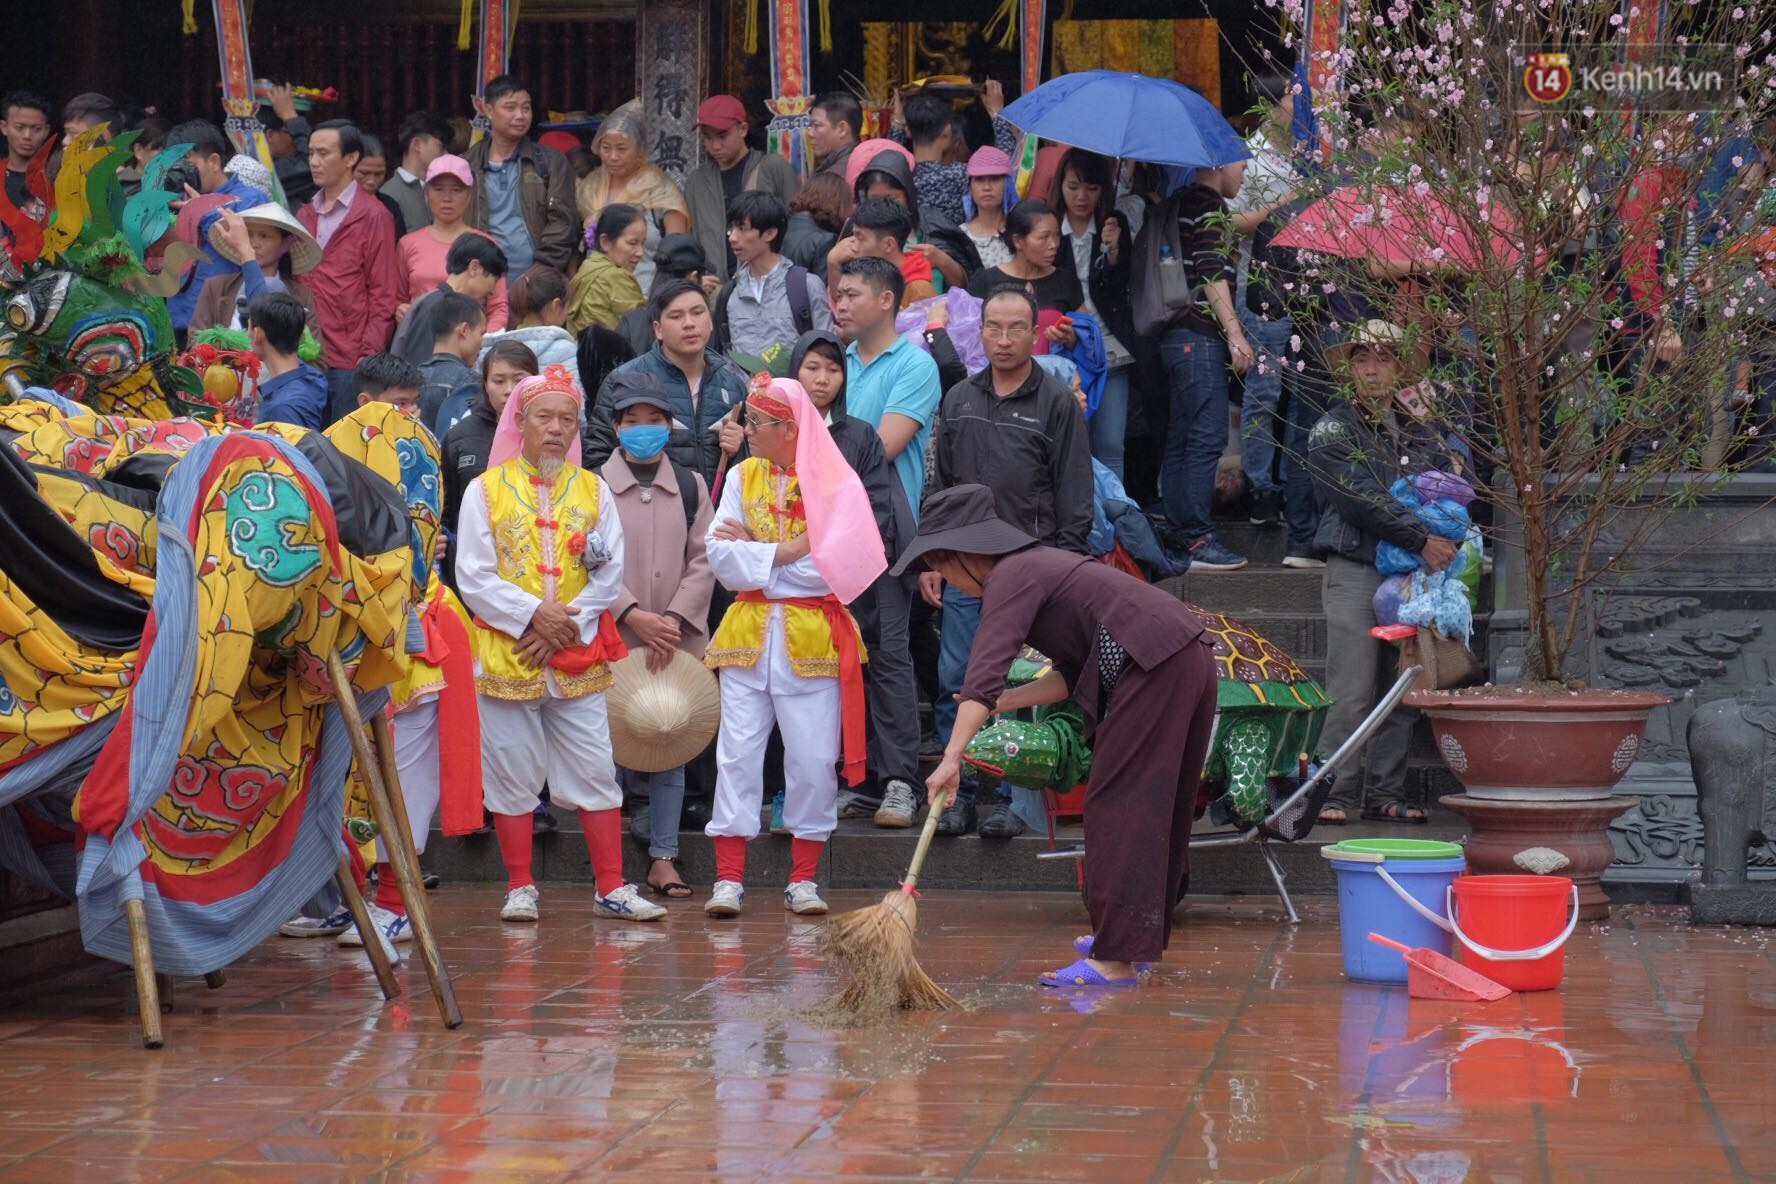 Khai hội chùa Hương, bất chấp mưa xuân người dân vẫn mặc áo mưa, che dù đến xem hội - Ảnh 5.